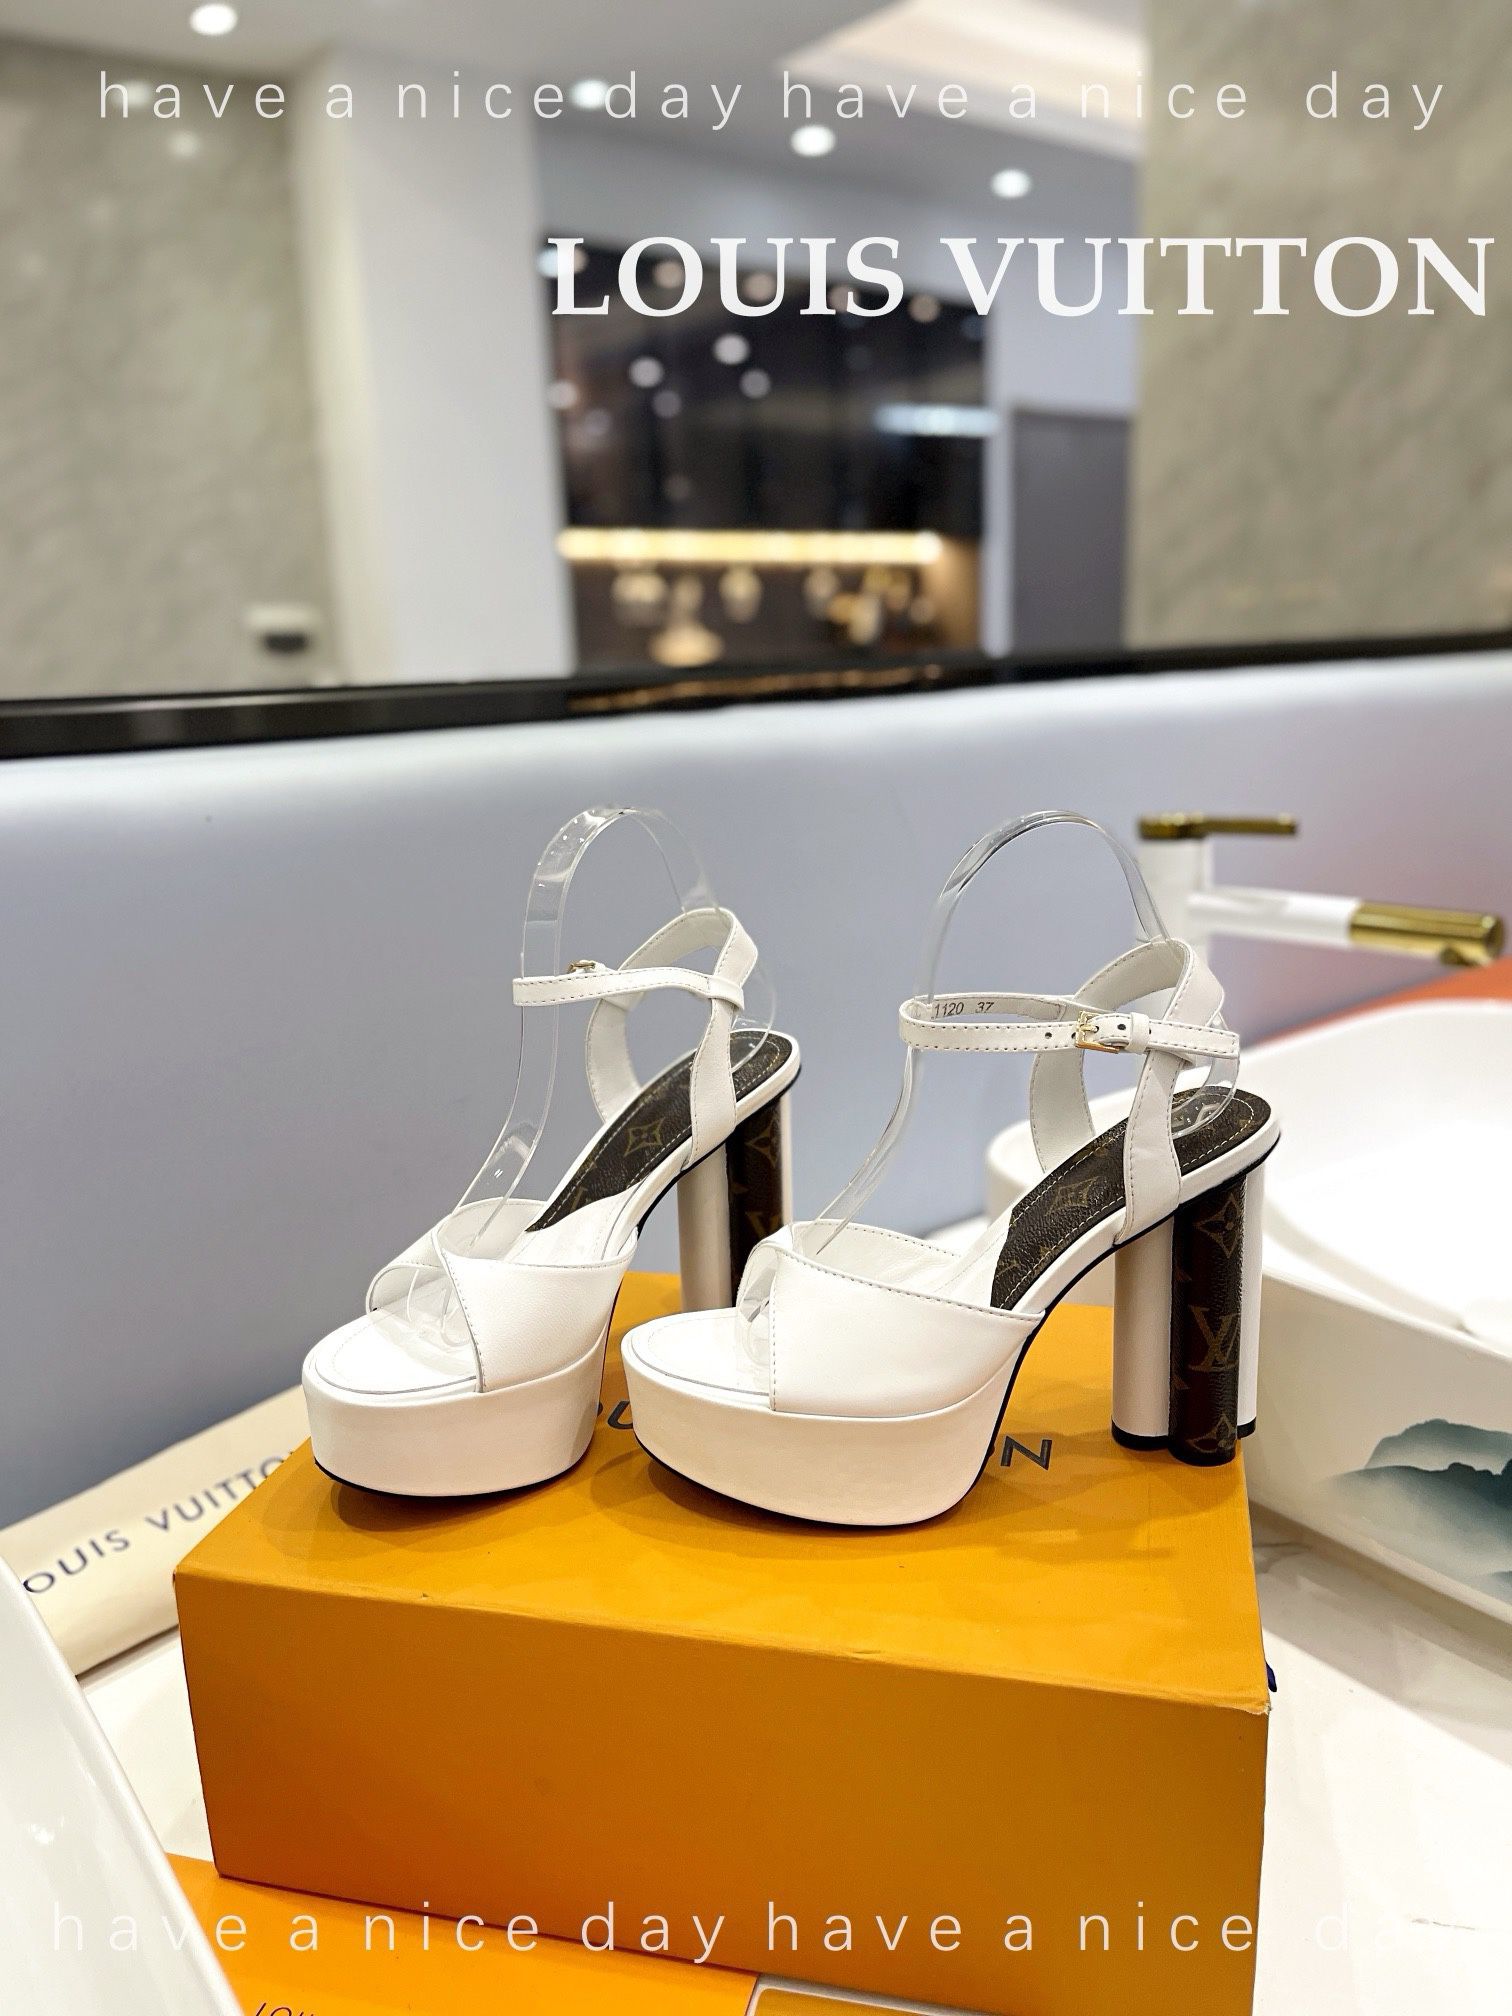 Louis Vuitton High Heels